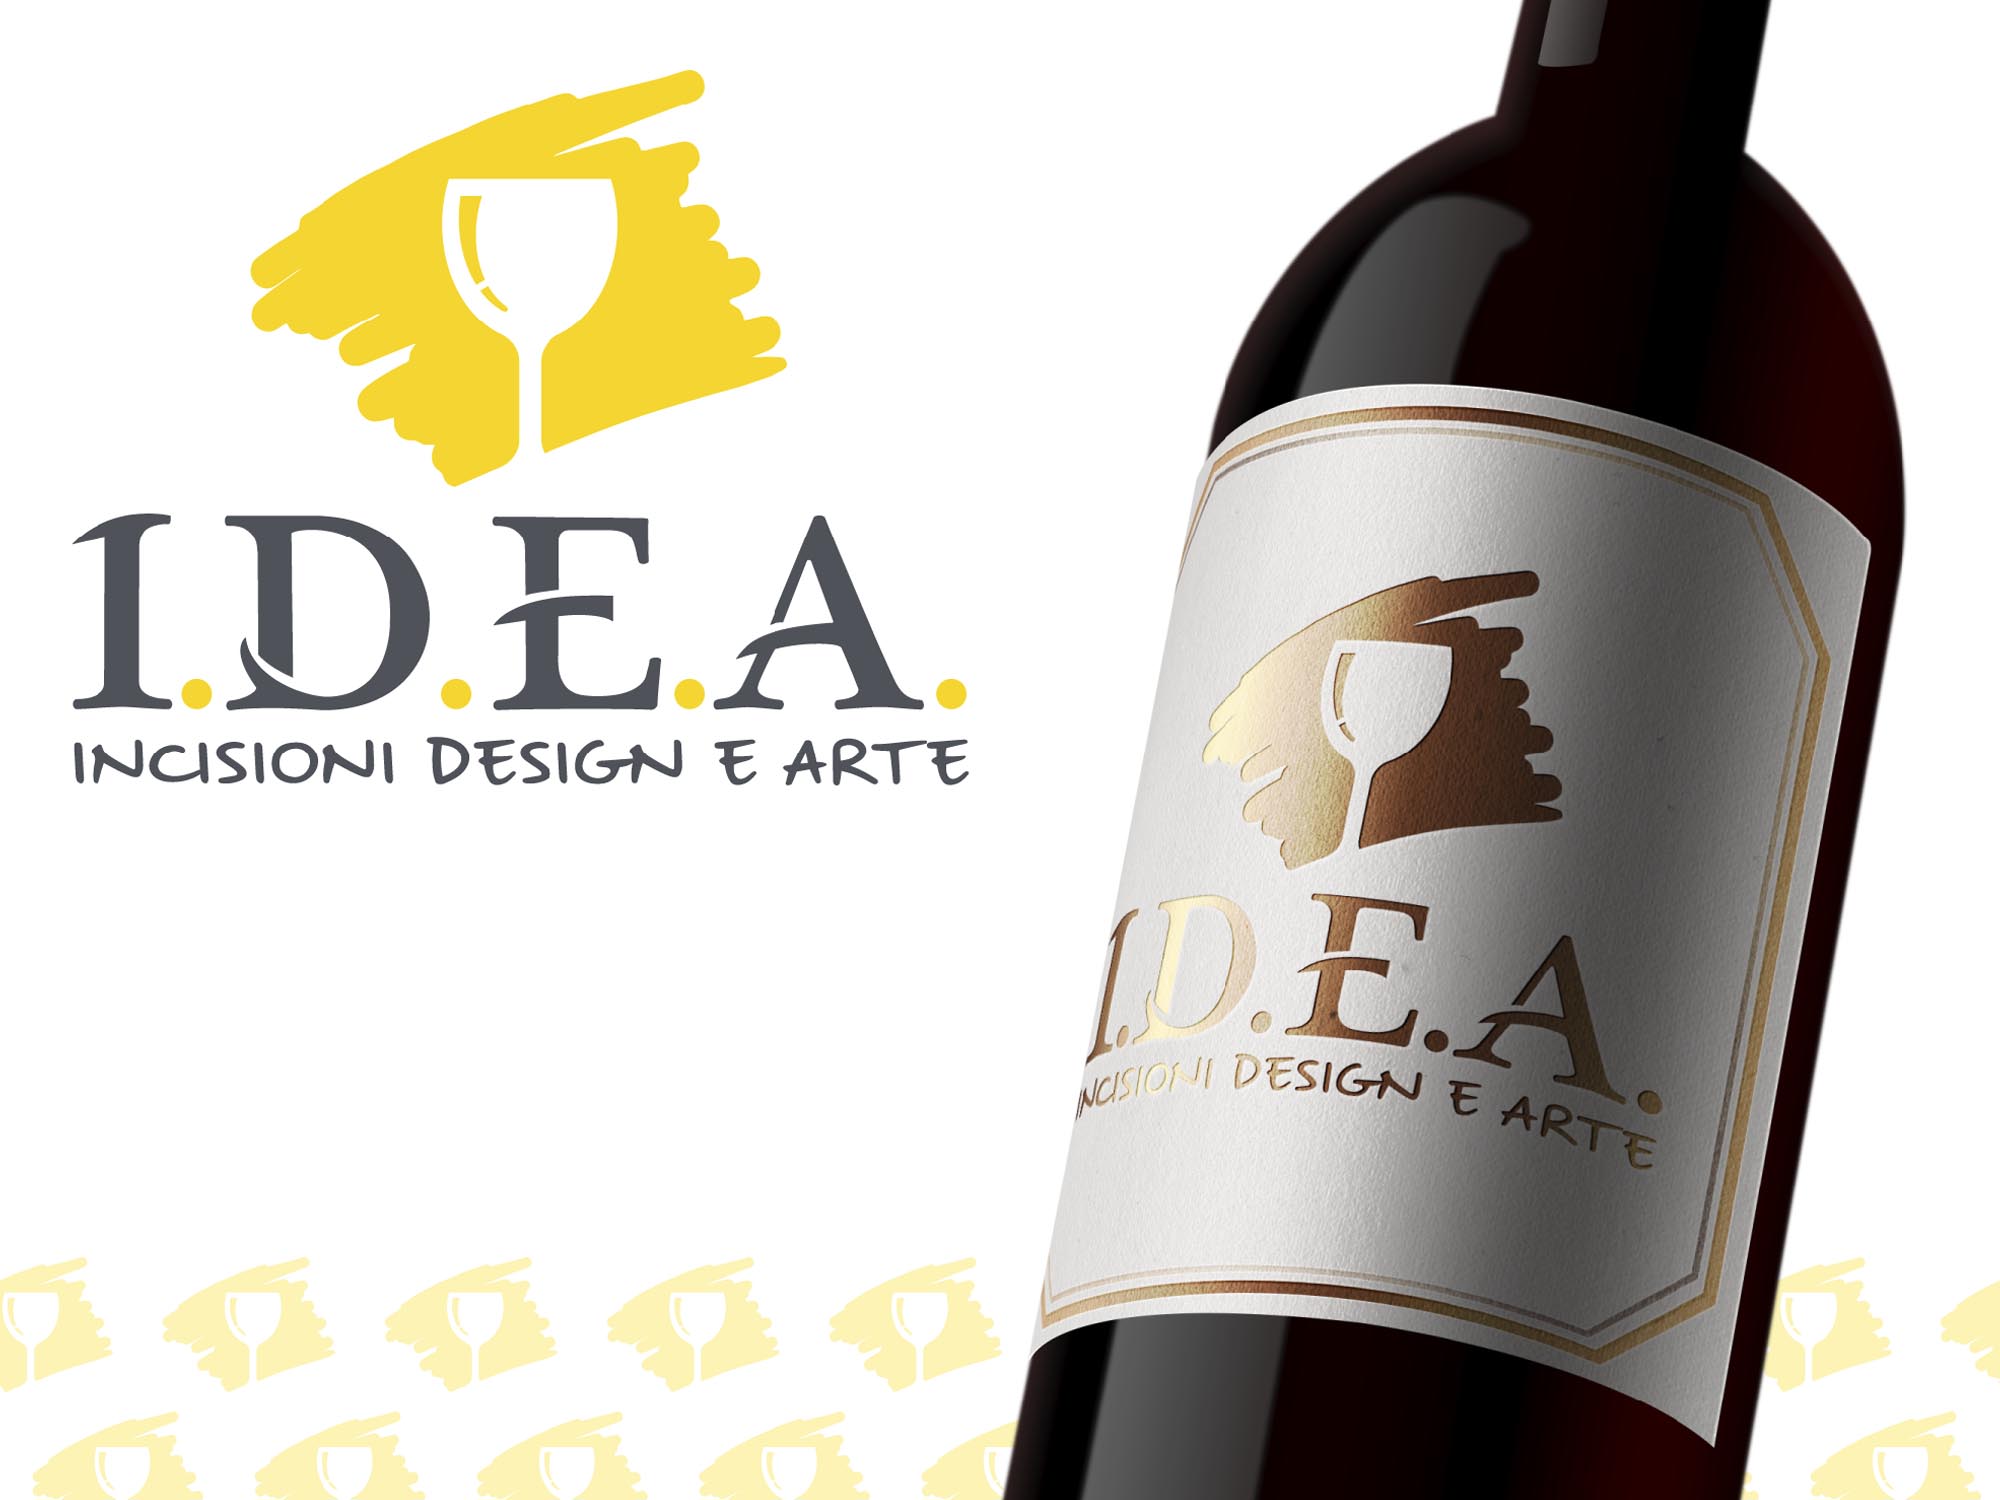 Logo e etichetta per bottiglie di vino della ditta I.D.E.A. di Trieste